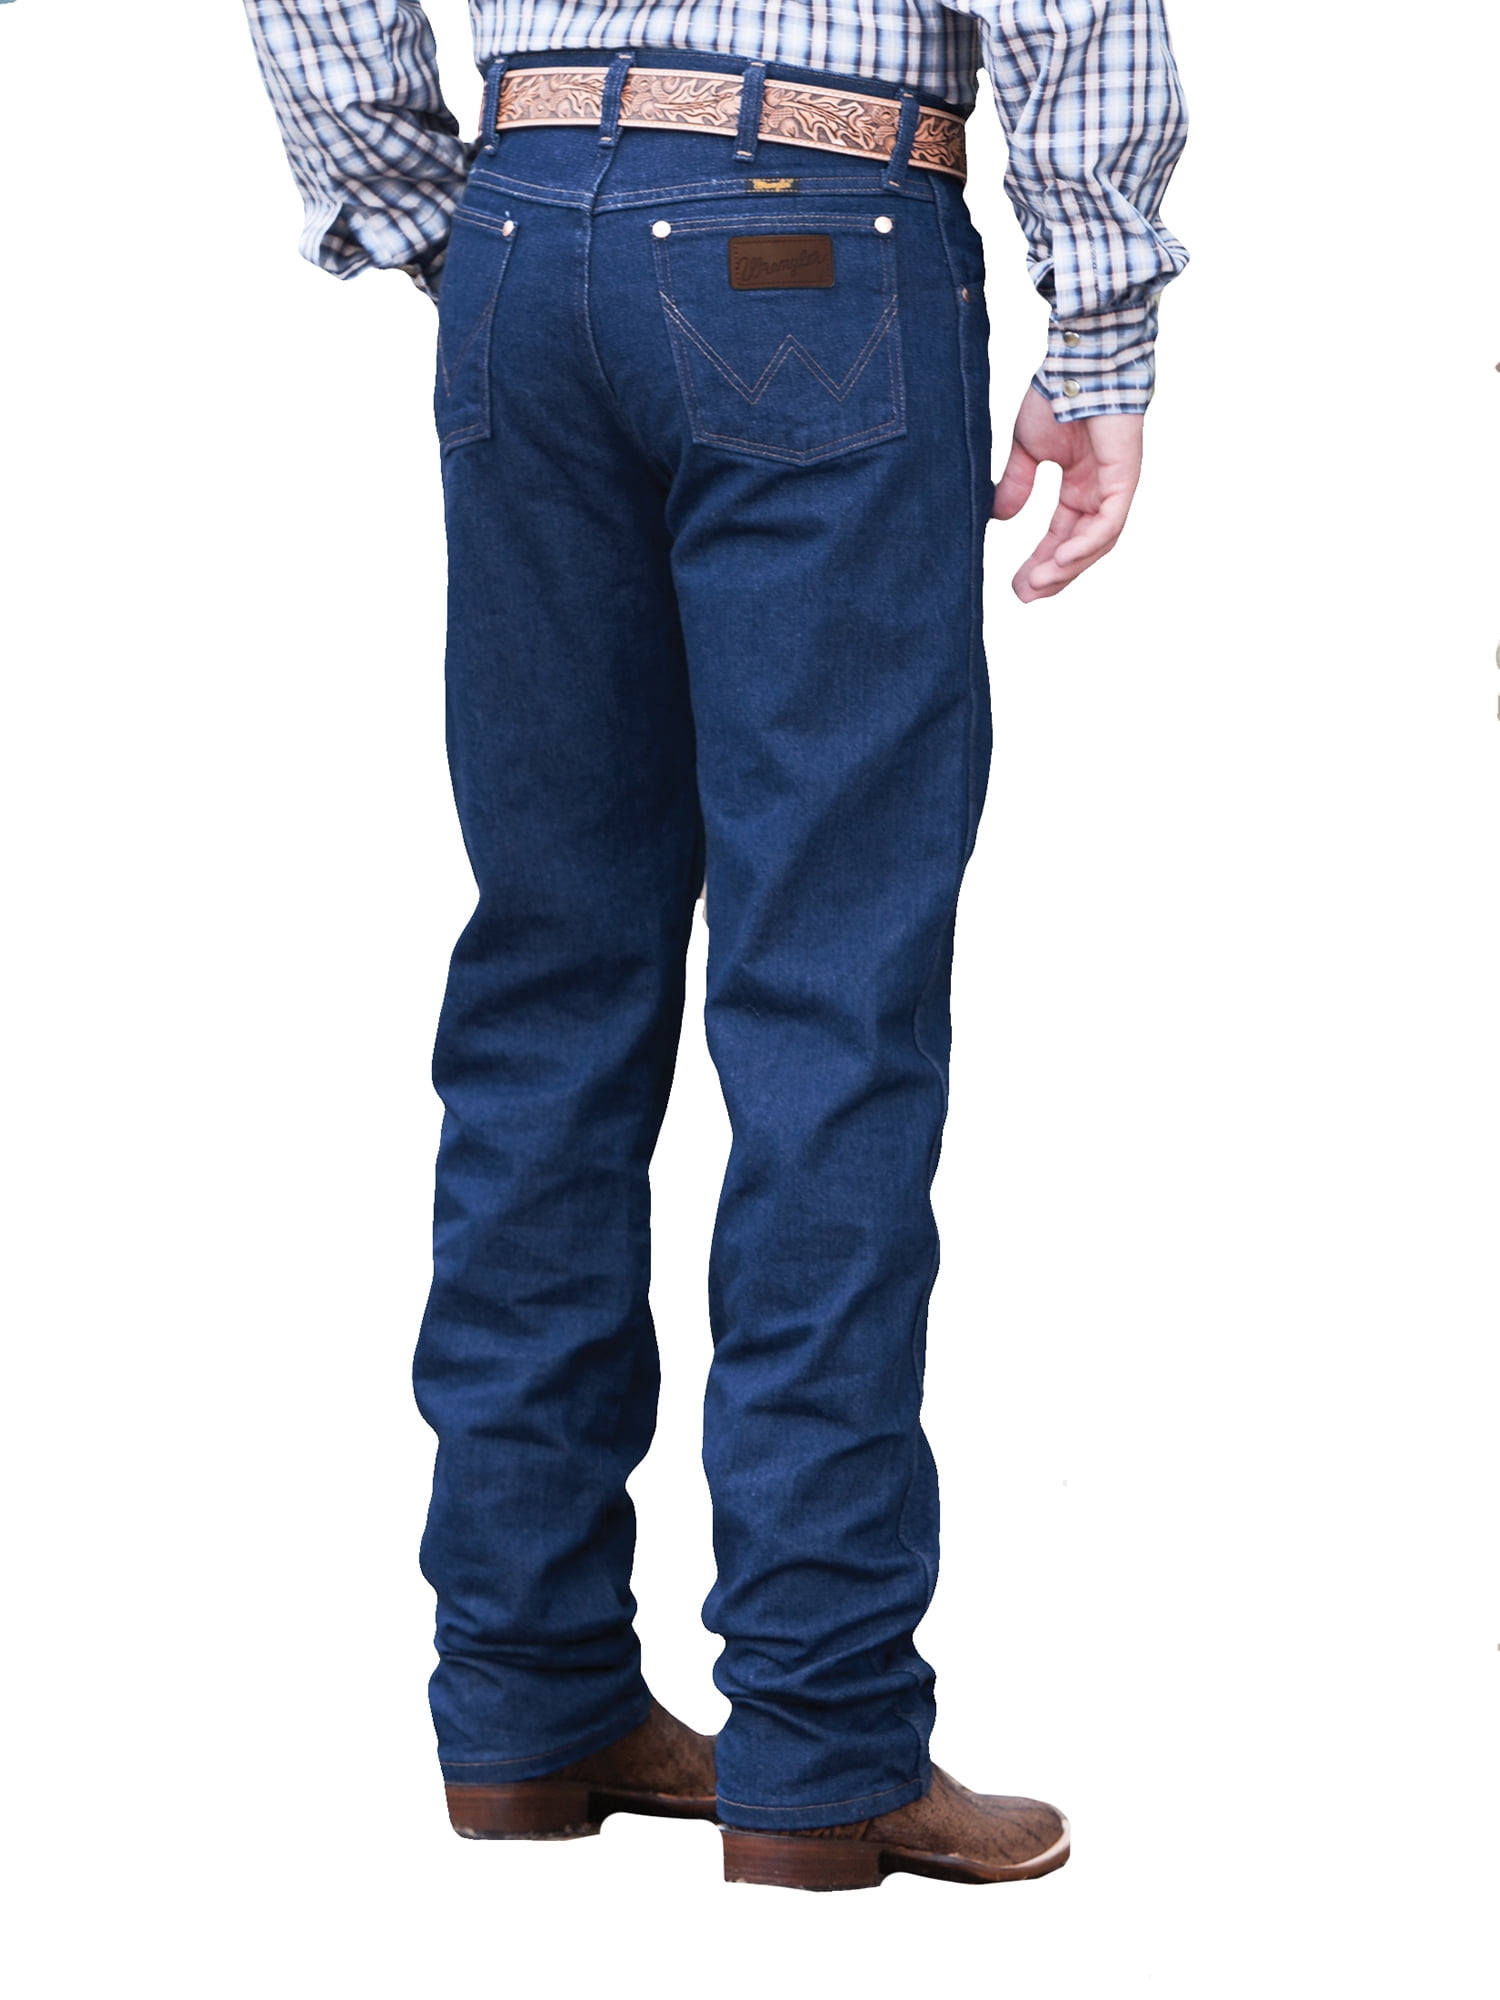 Wrangler Original Fit Prewashed Indigo Jeans 27-34 